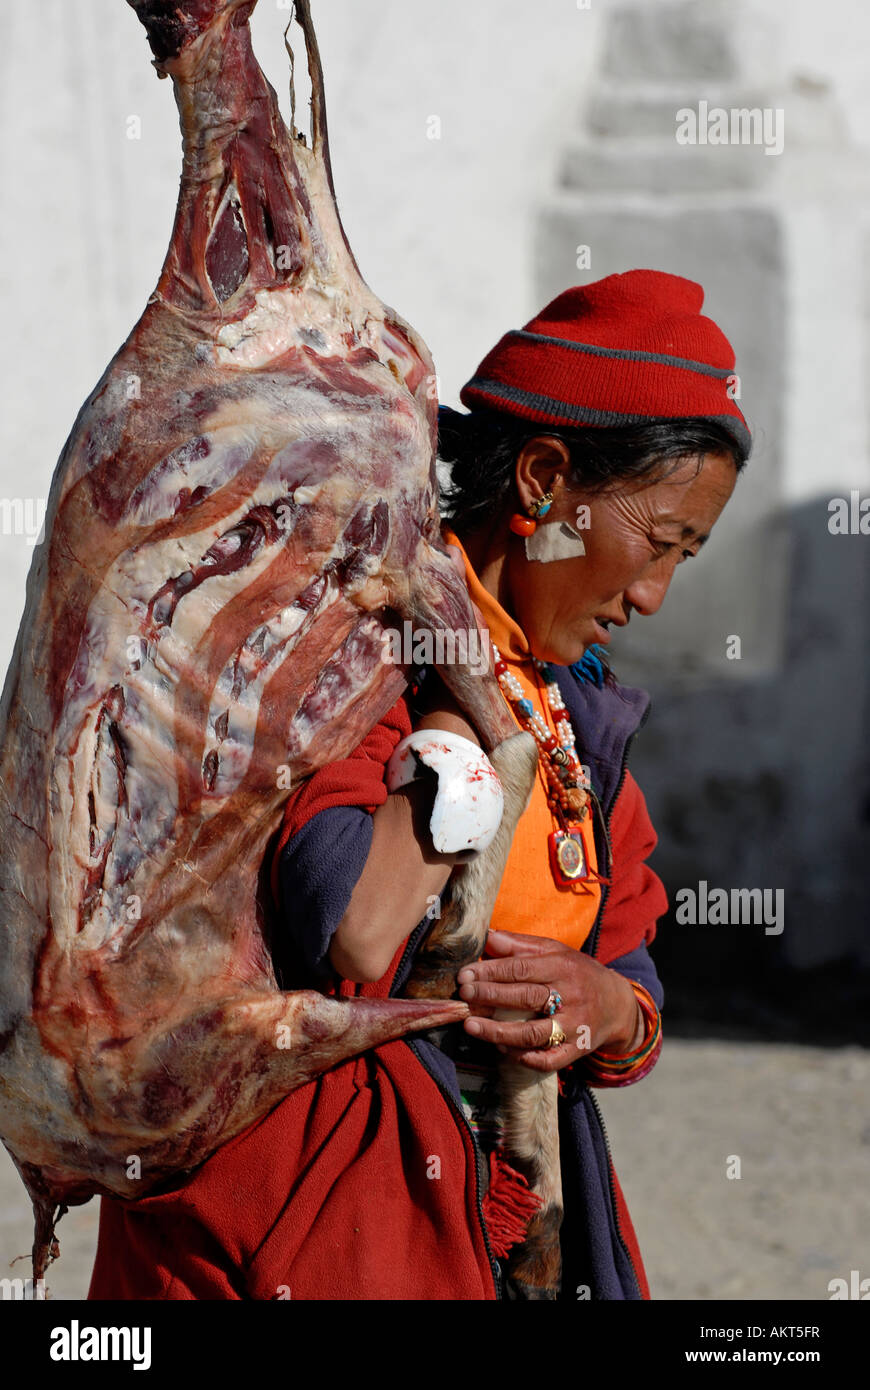 A tibetan man carrying an animal carcass Stock Photo